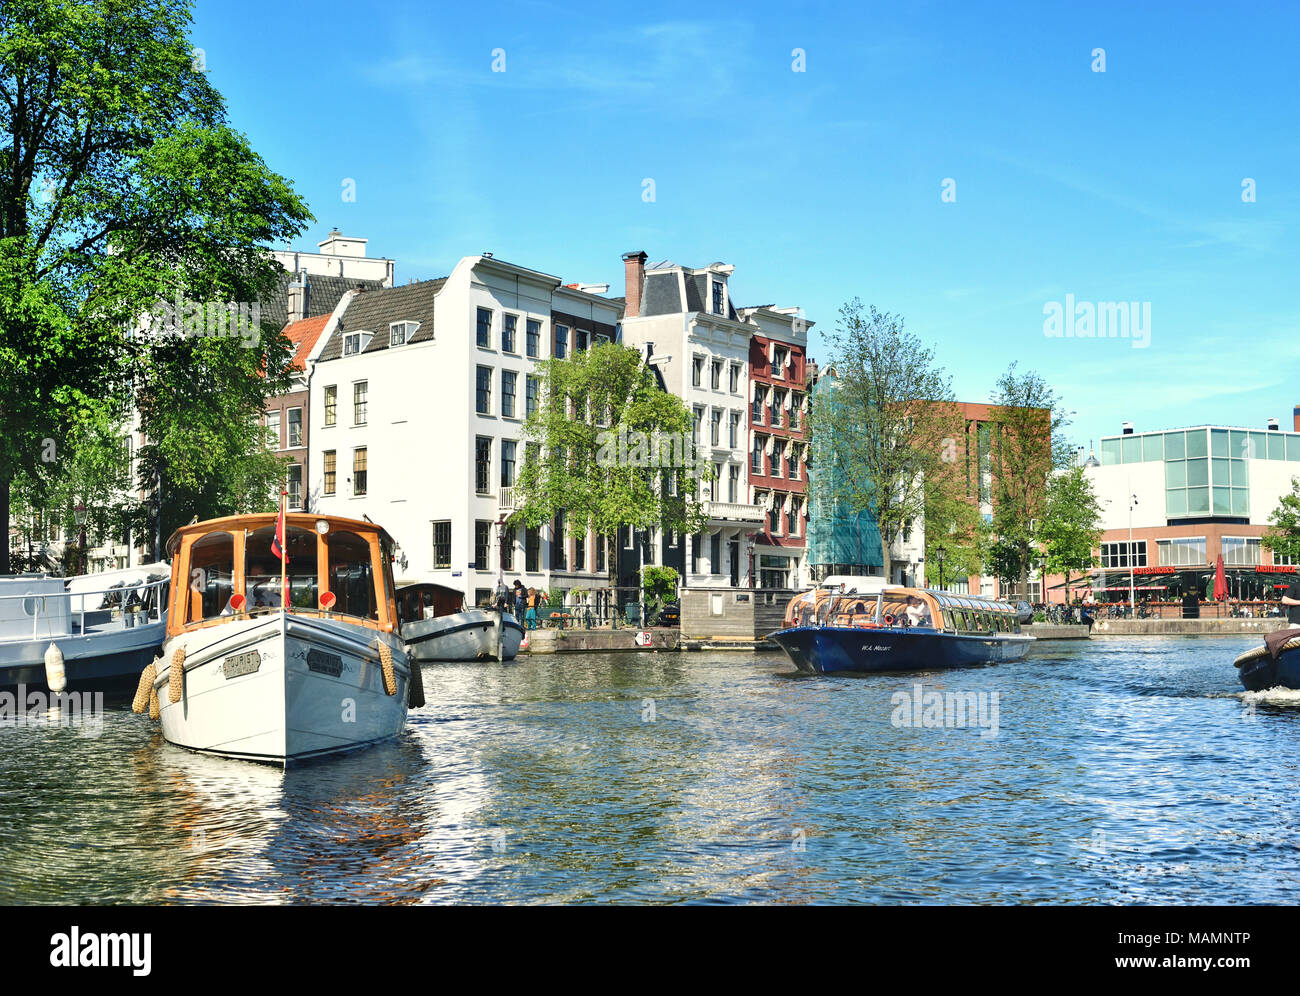 Kanal oder Gracht in Amsterdam City. Amstel Szene mit Boote und alte Häuser. Stockfoto